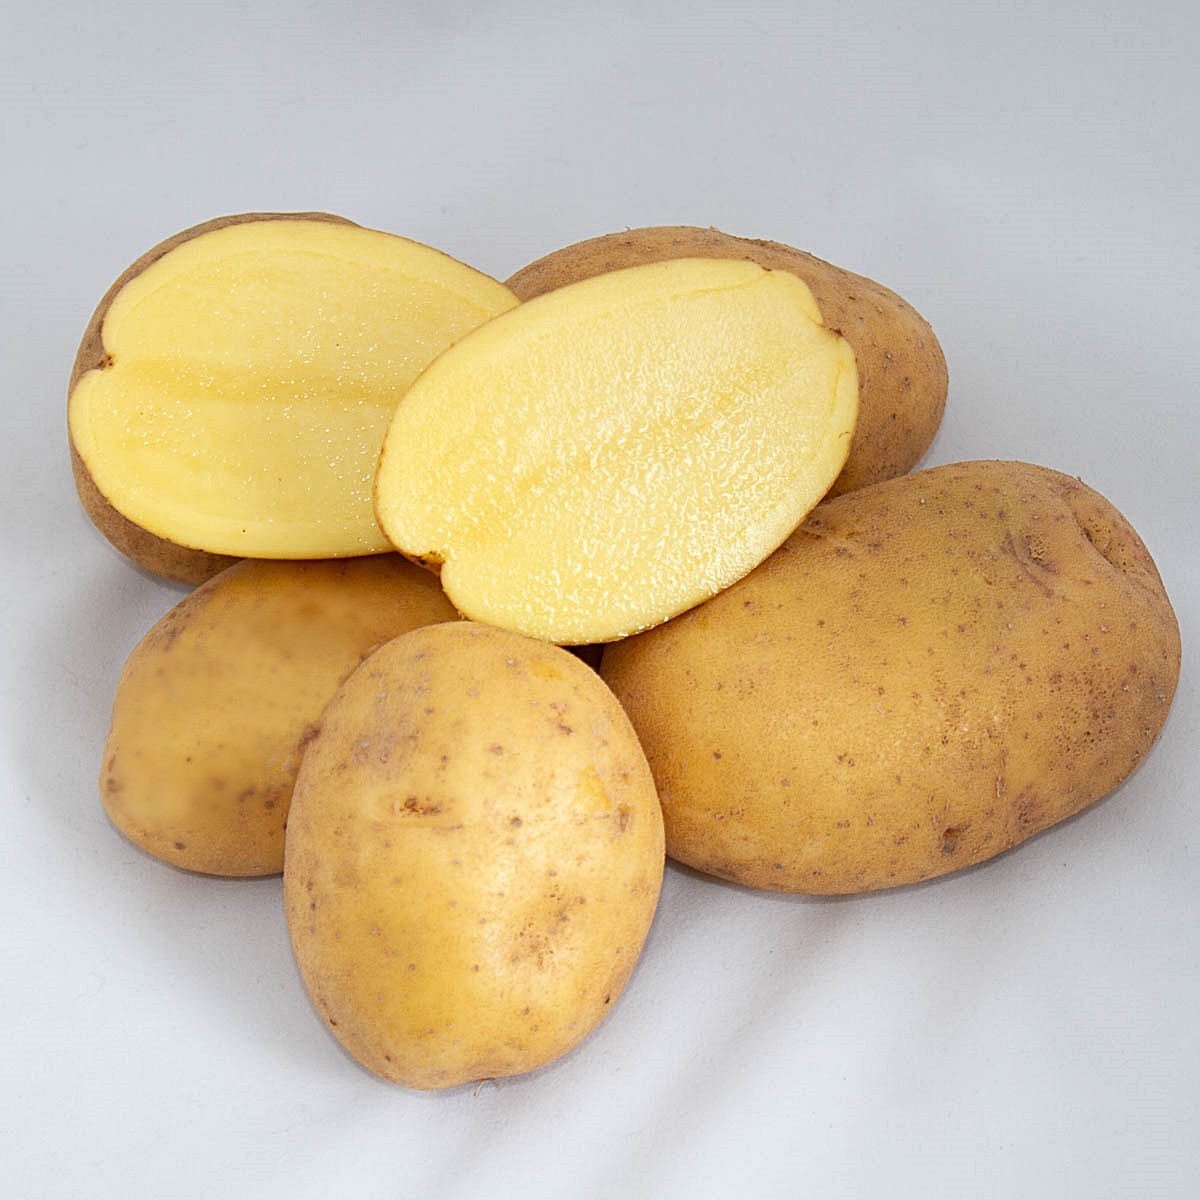 Коломбо картофель характеристика